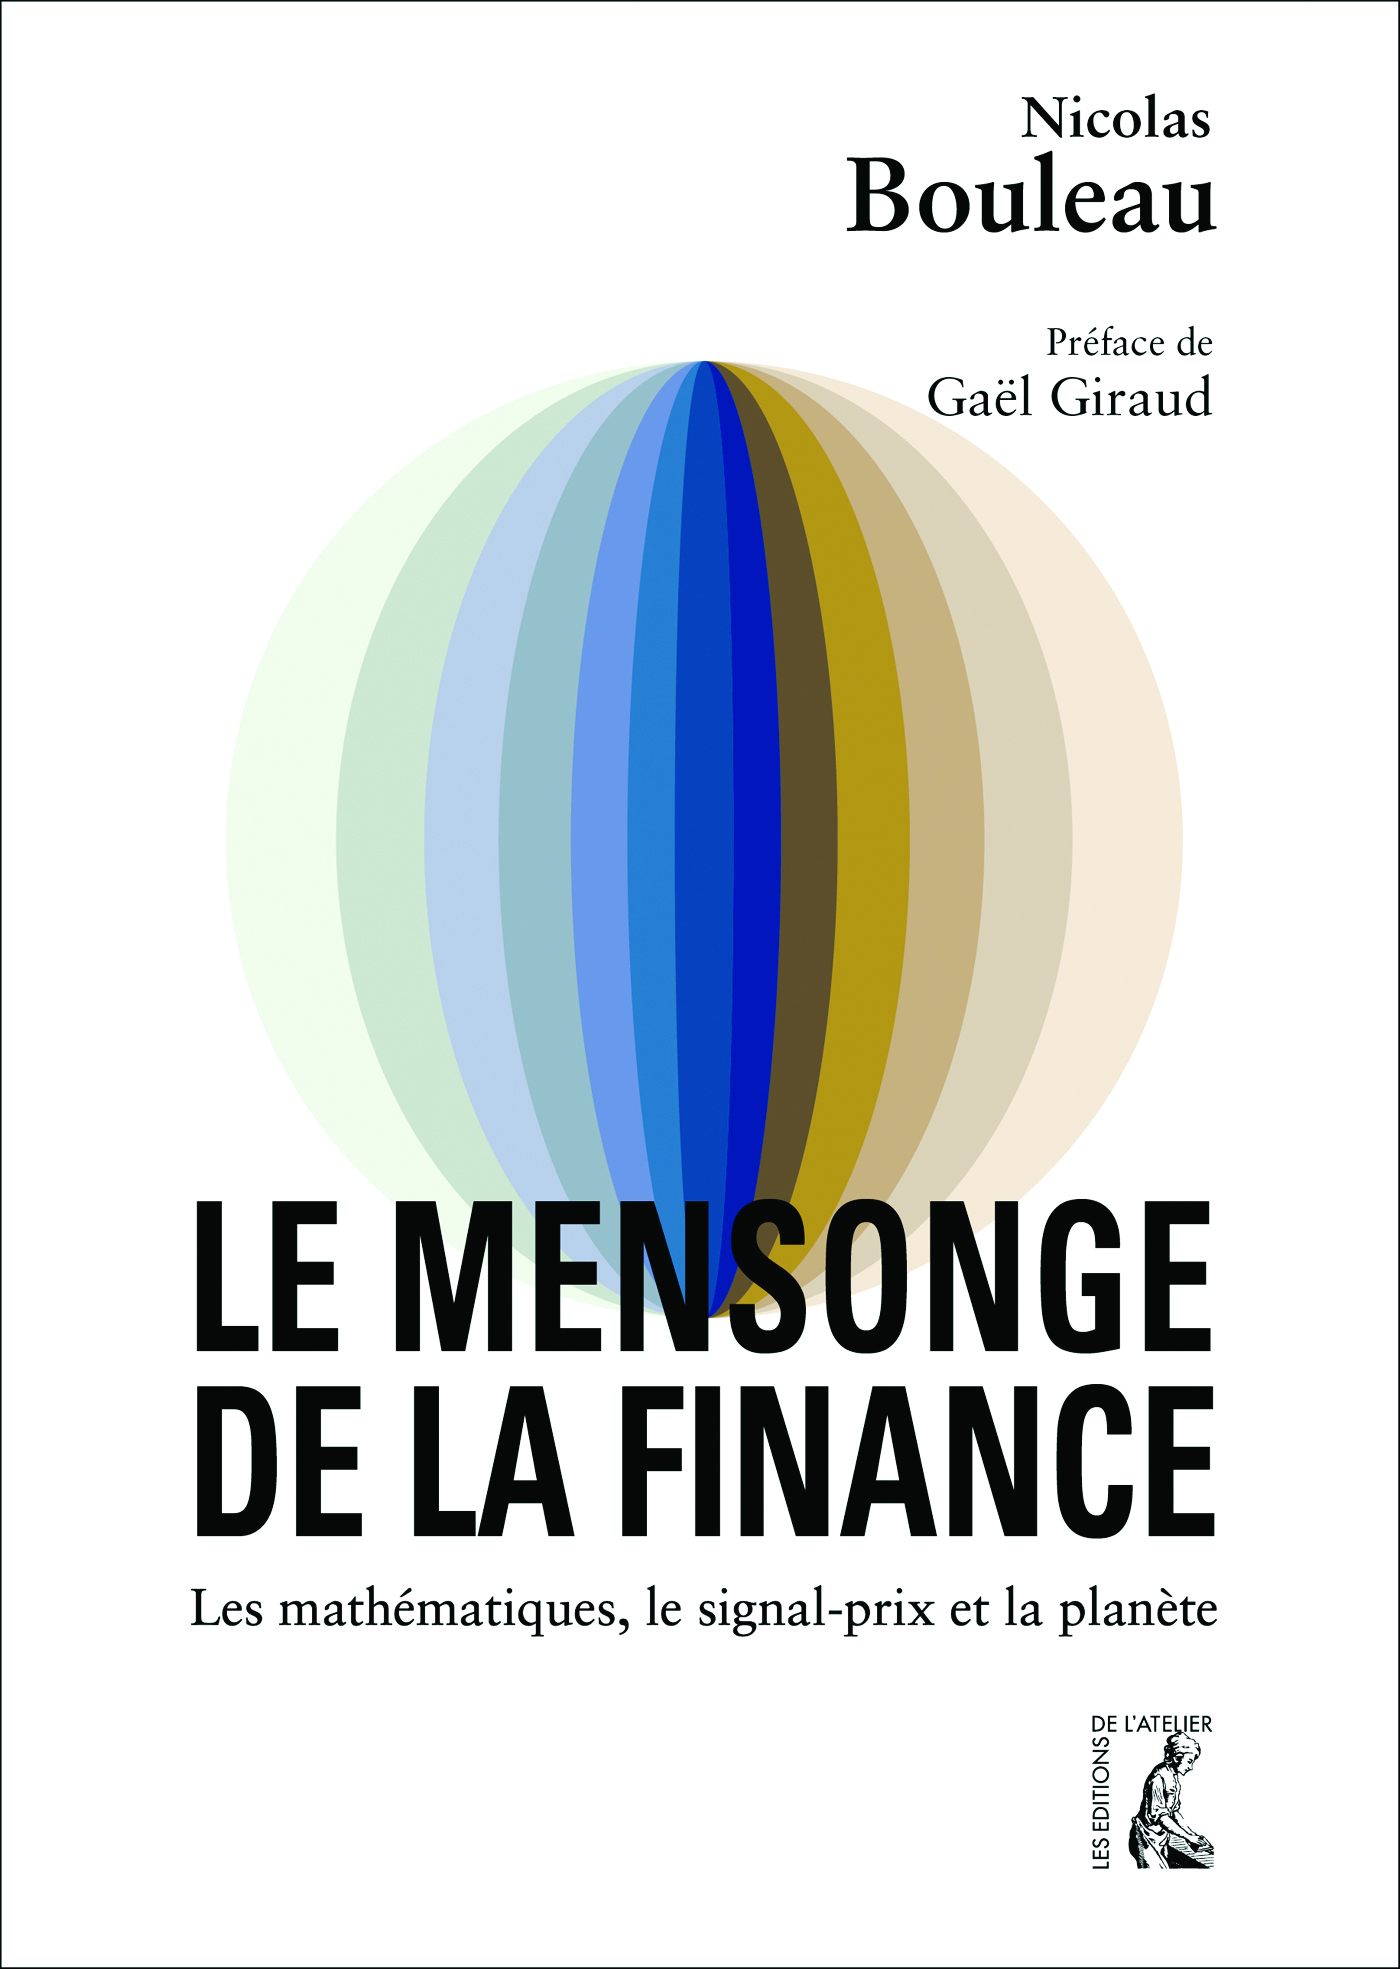 Le mensonge de la finance De Nicolas Bouleau - Éditions de l'Atelier